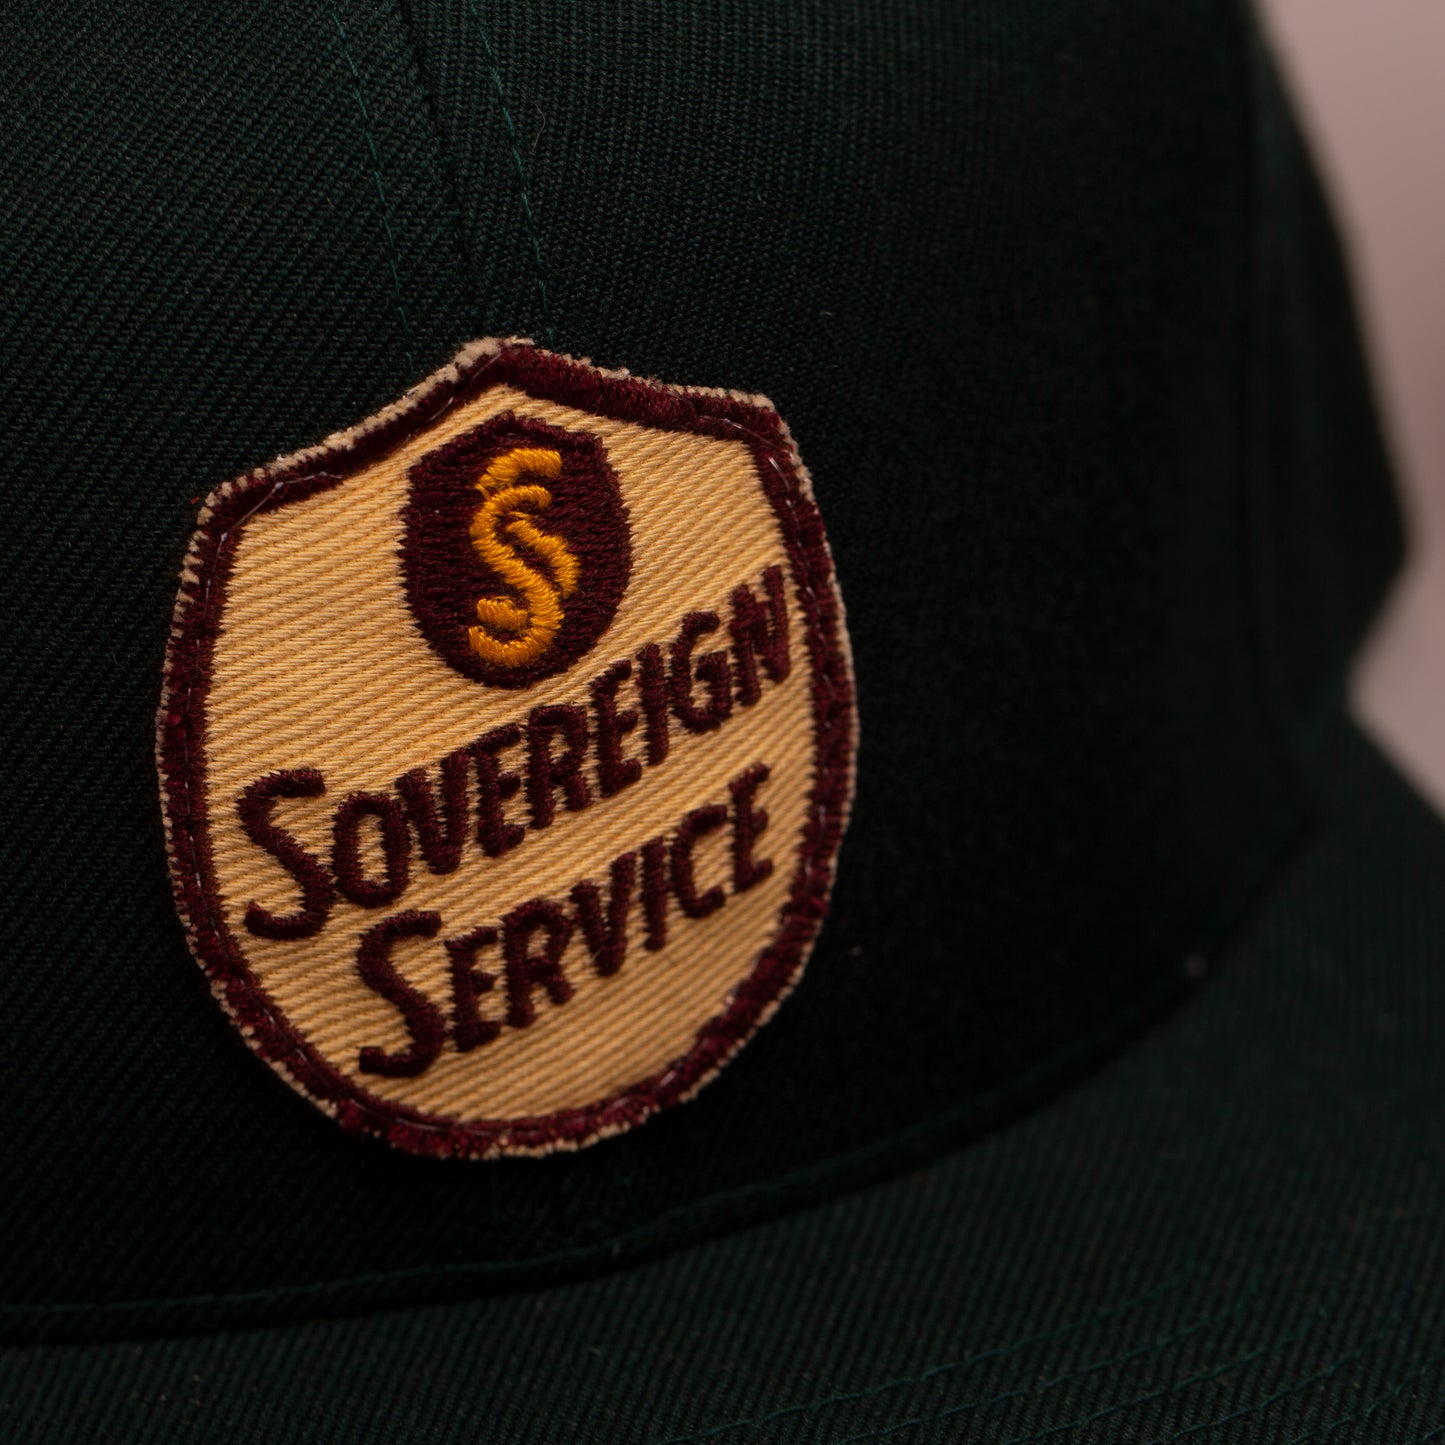 Sovereign Service Green